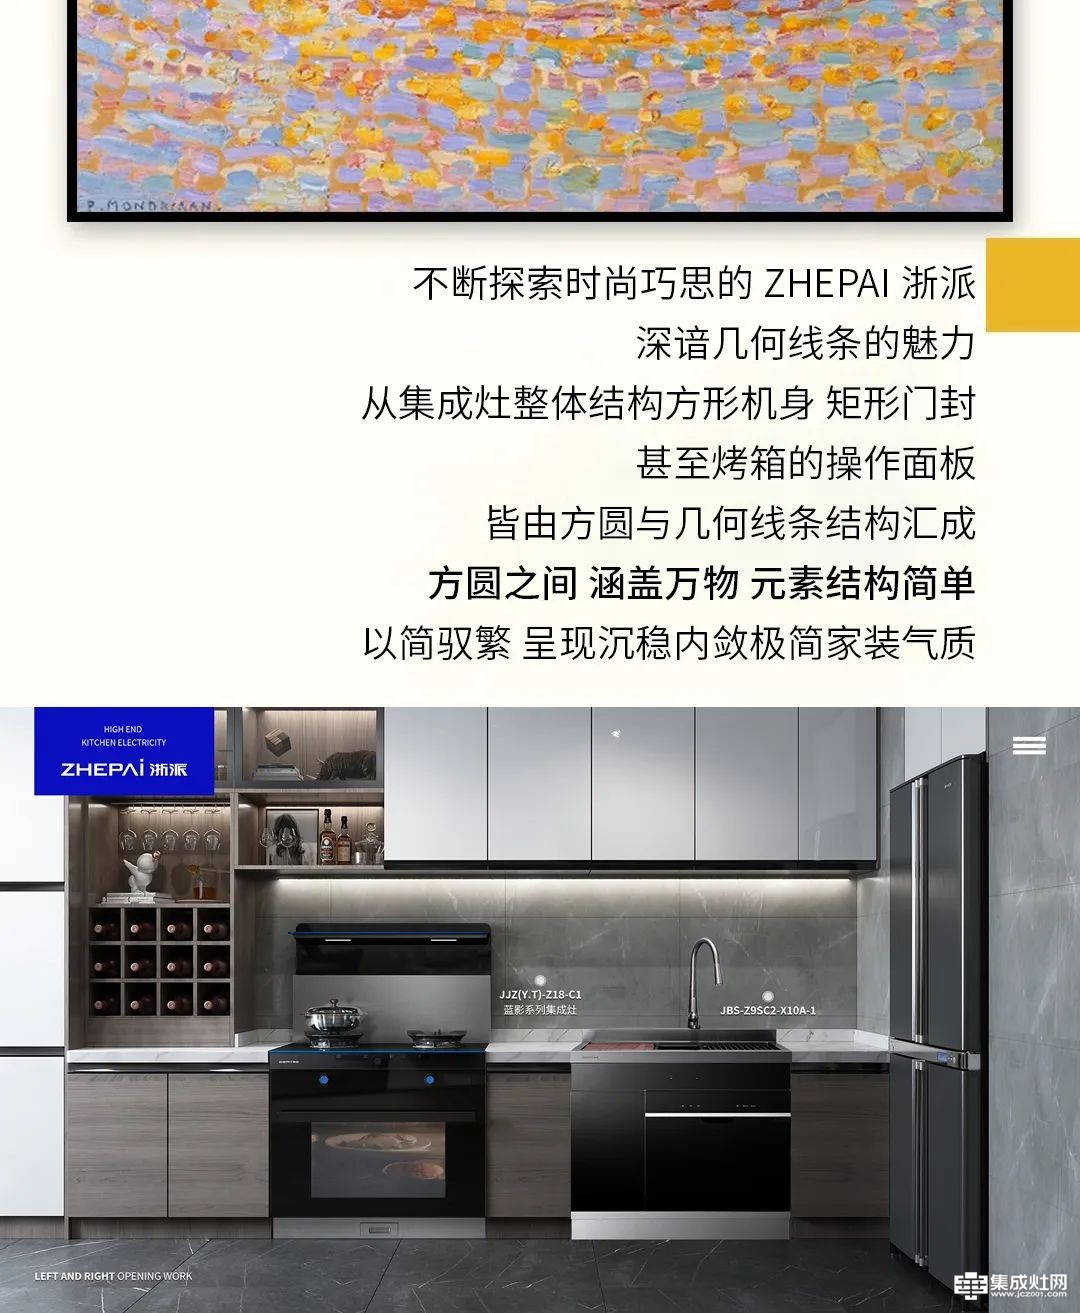 以色块元素构筑时尚厨房 浙派打造美好烹饪空间